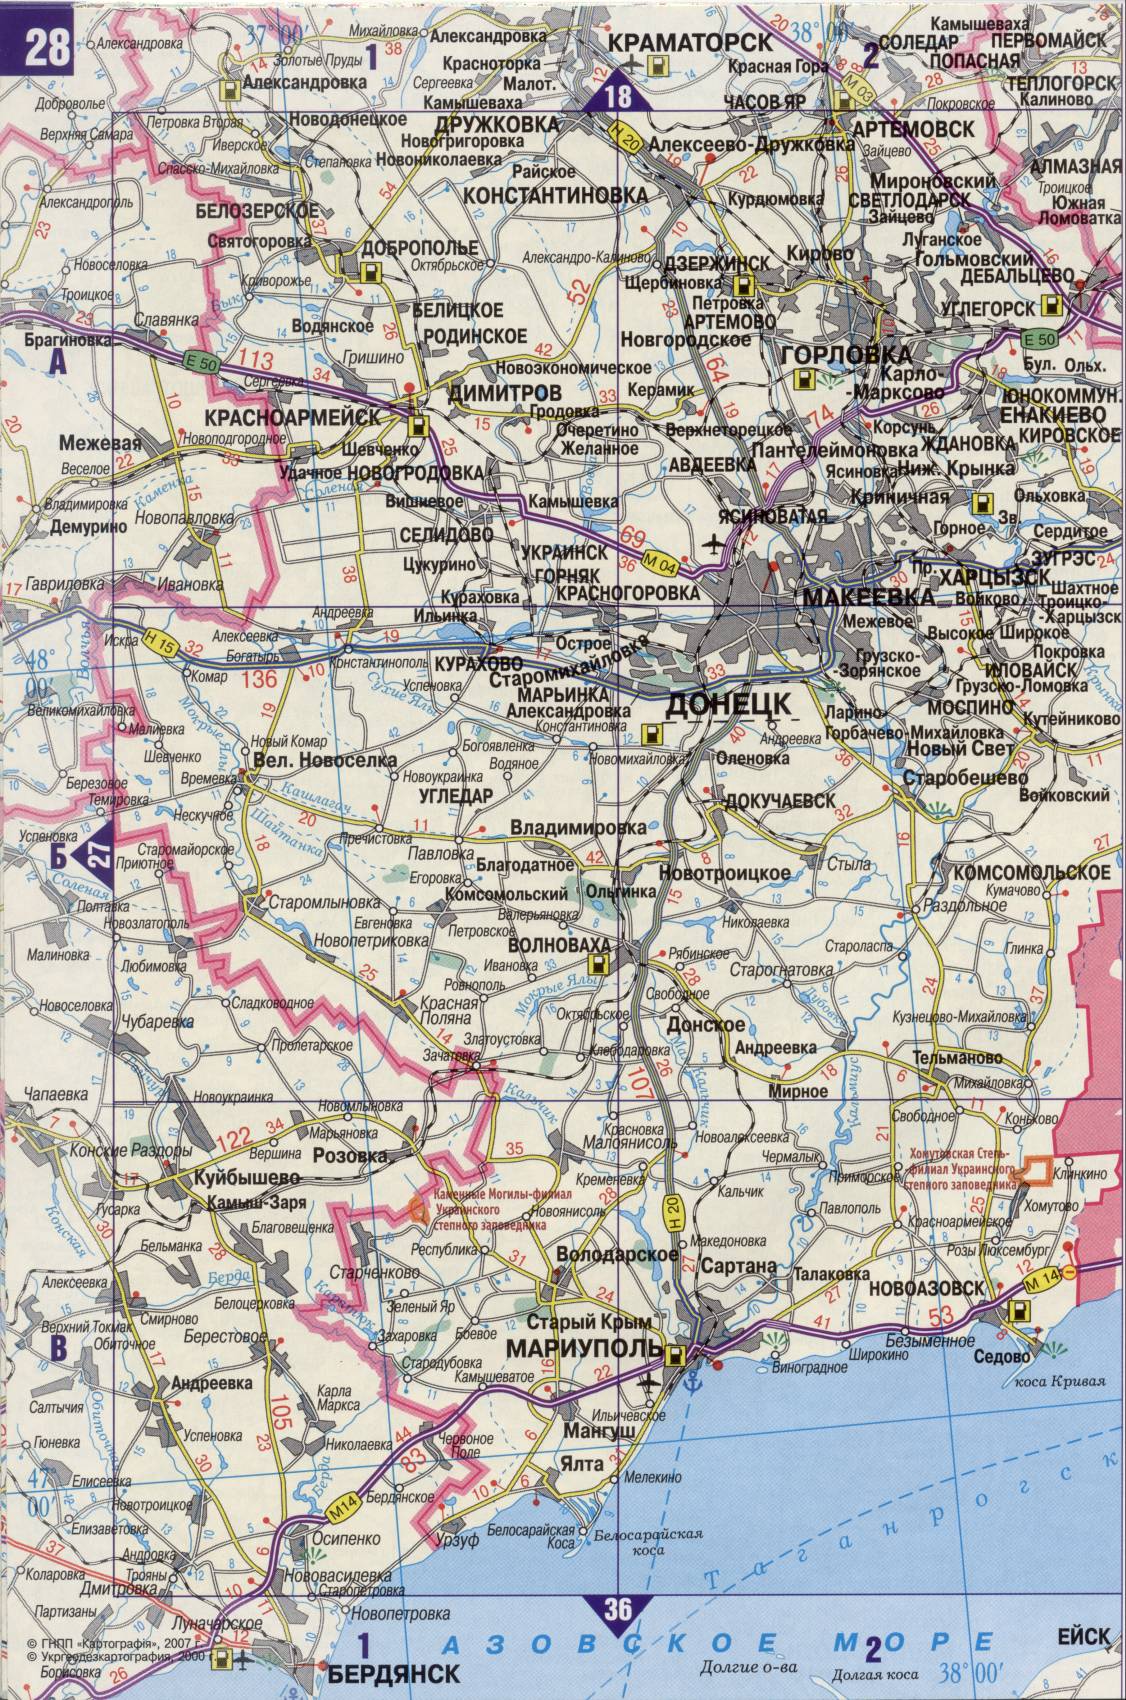 Карта Украины. Подробная карта дорог Украина из автомобильног атласа. скачать бесплатно, I2